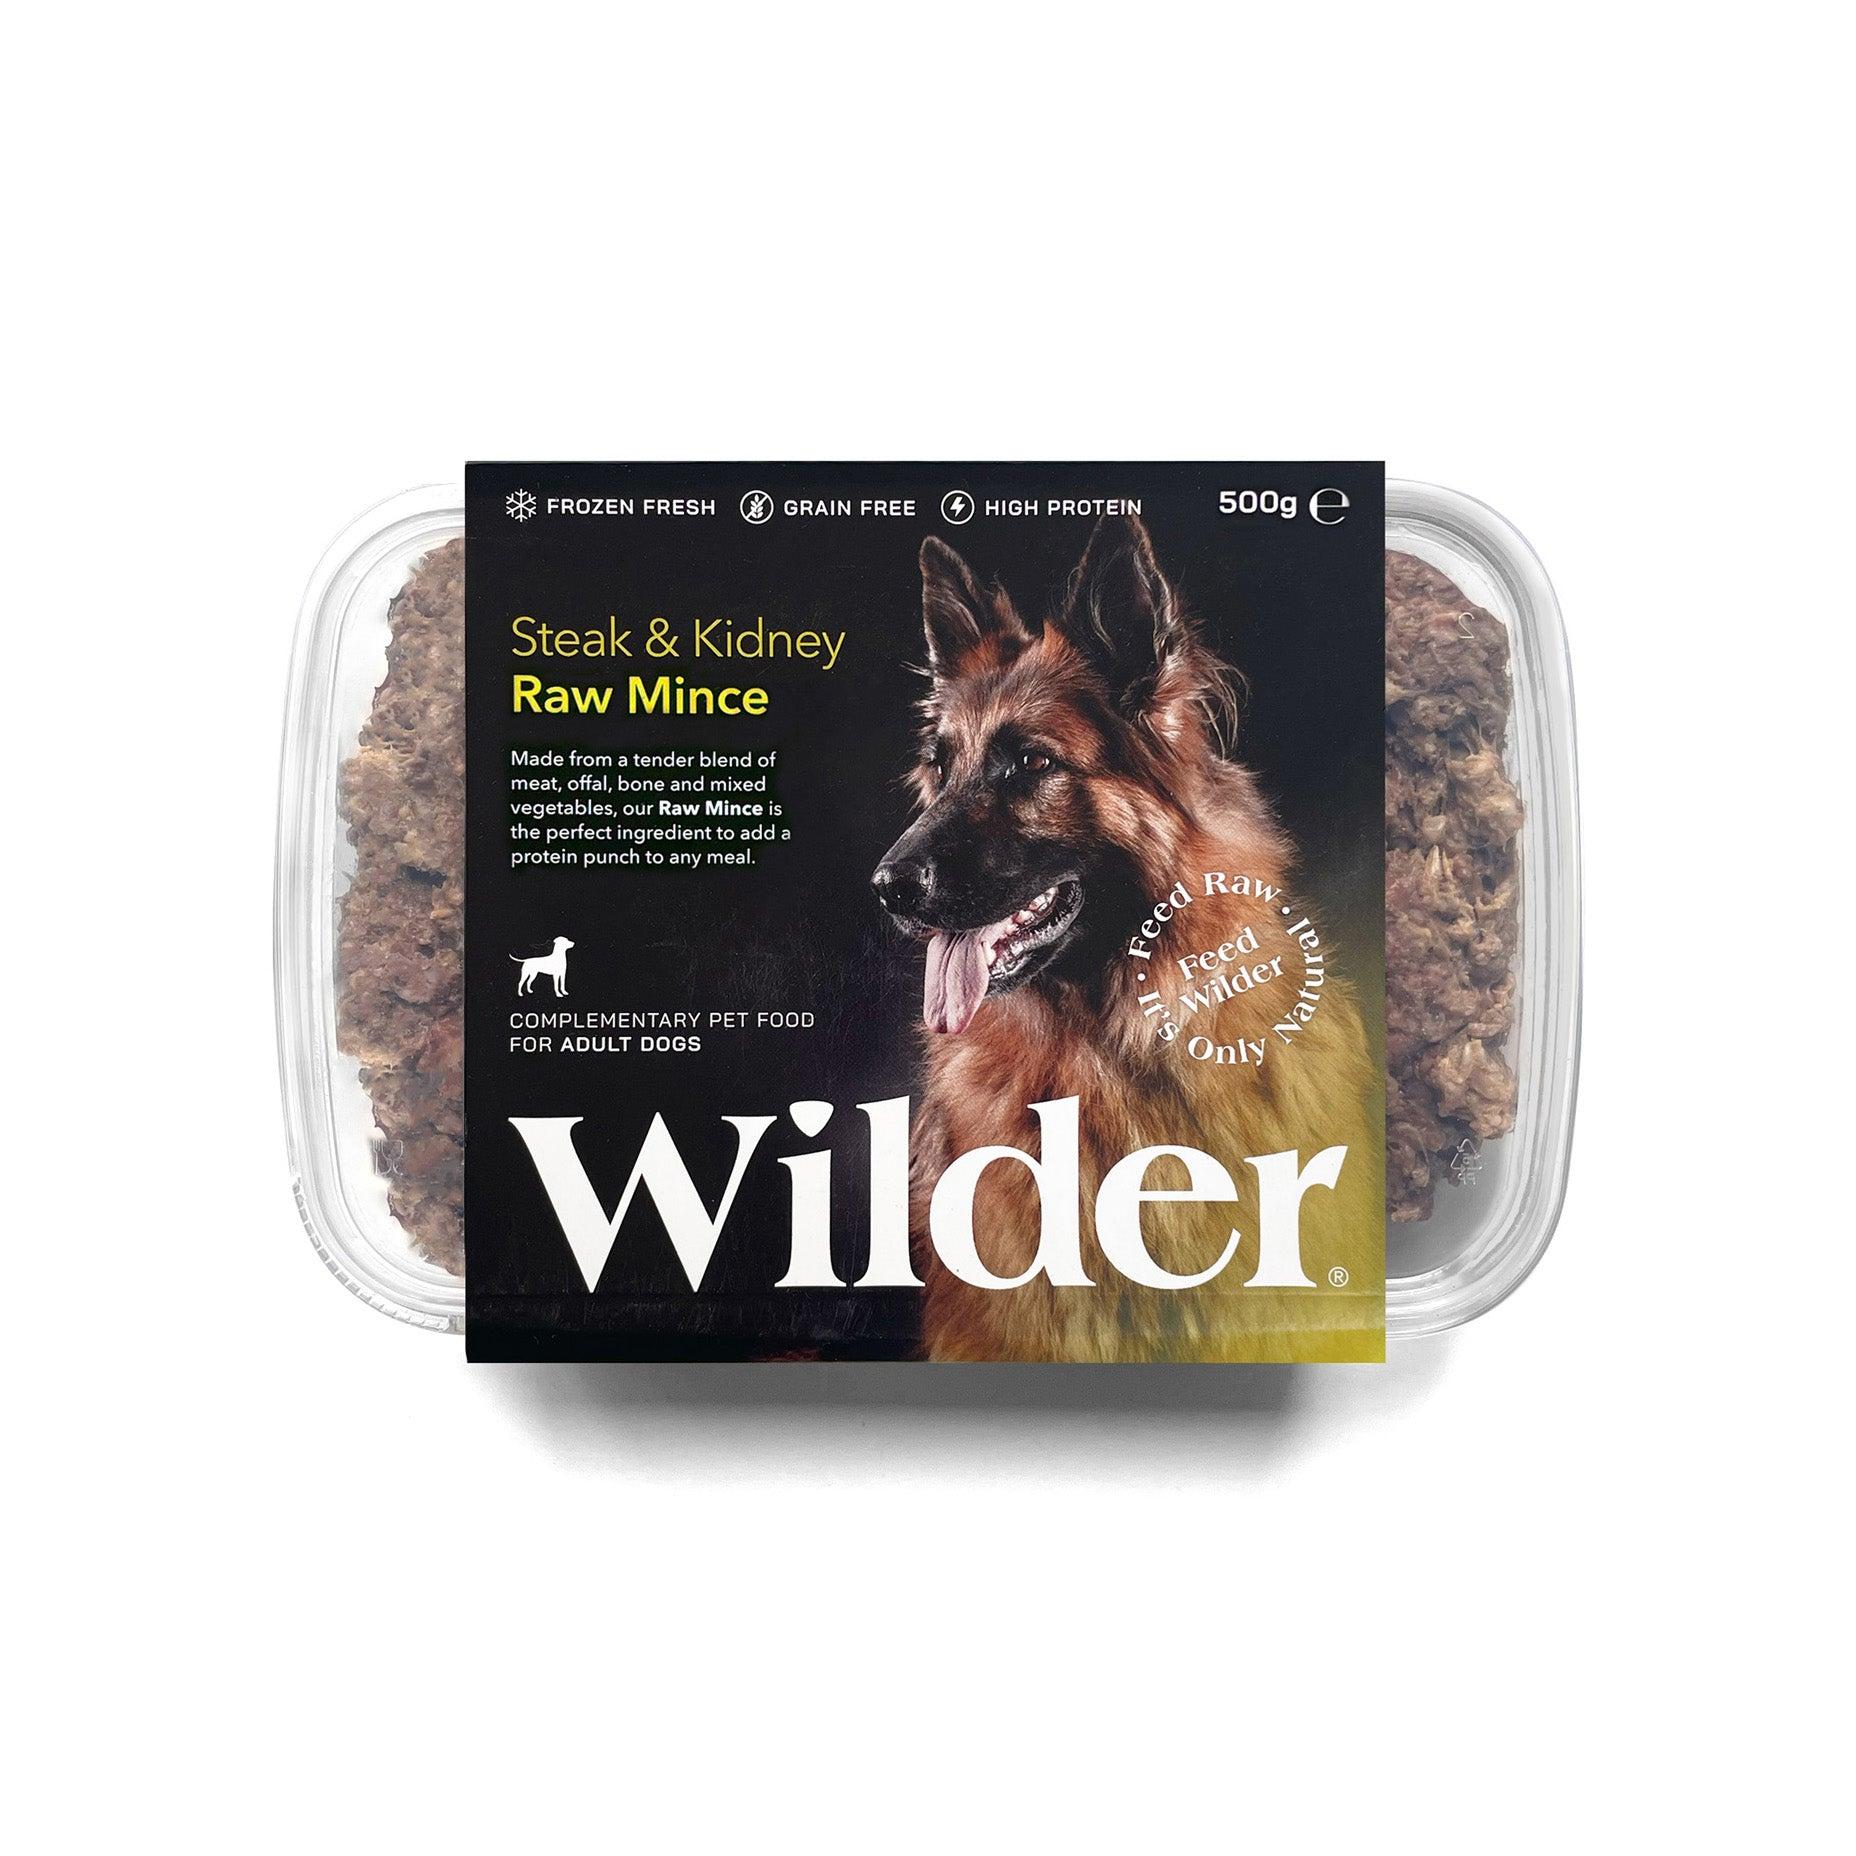 Wilder Steak & Kidney Raw Mince 500g Pack Yellow Label